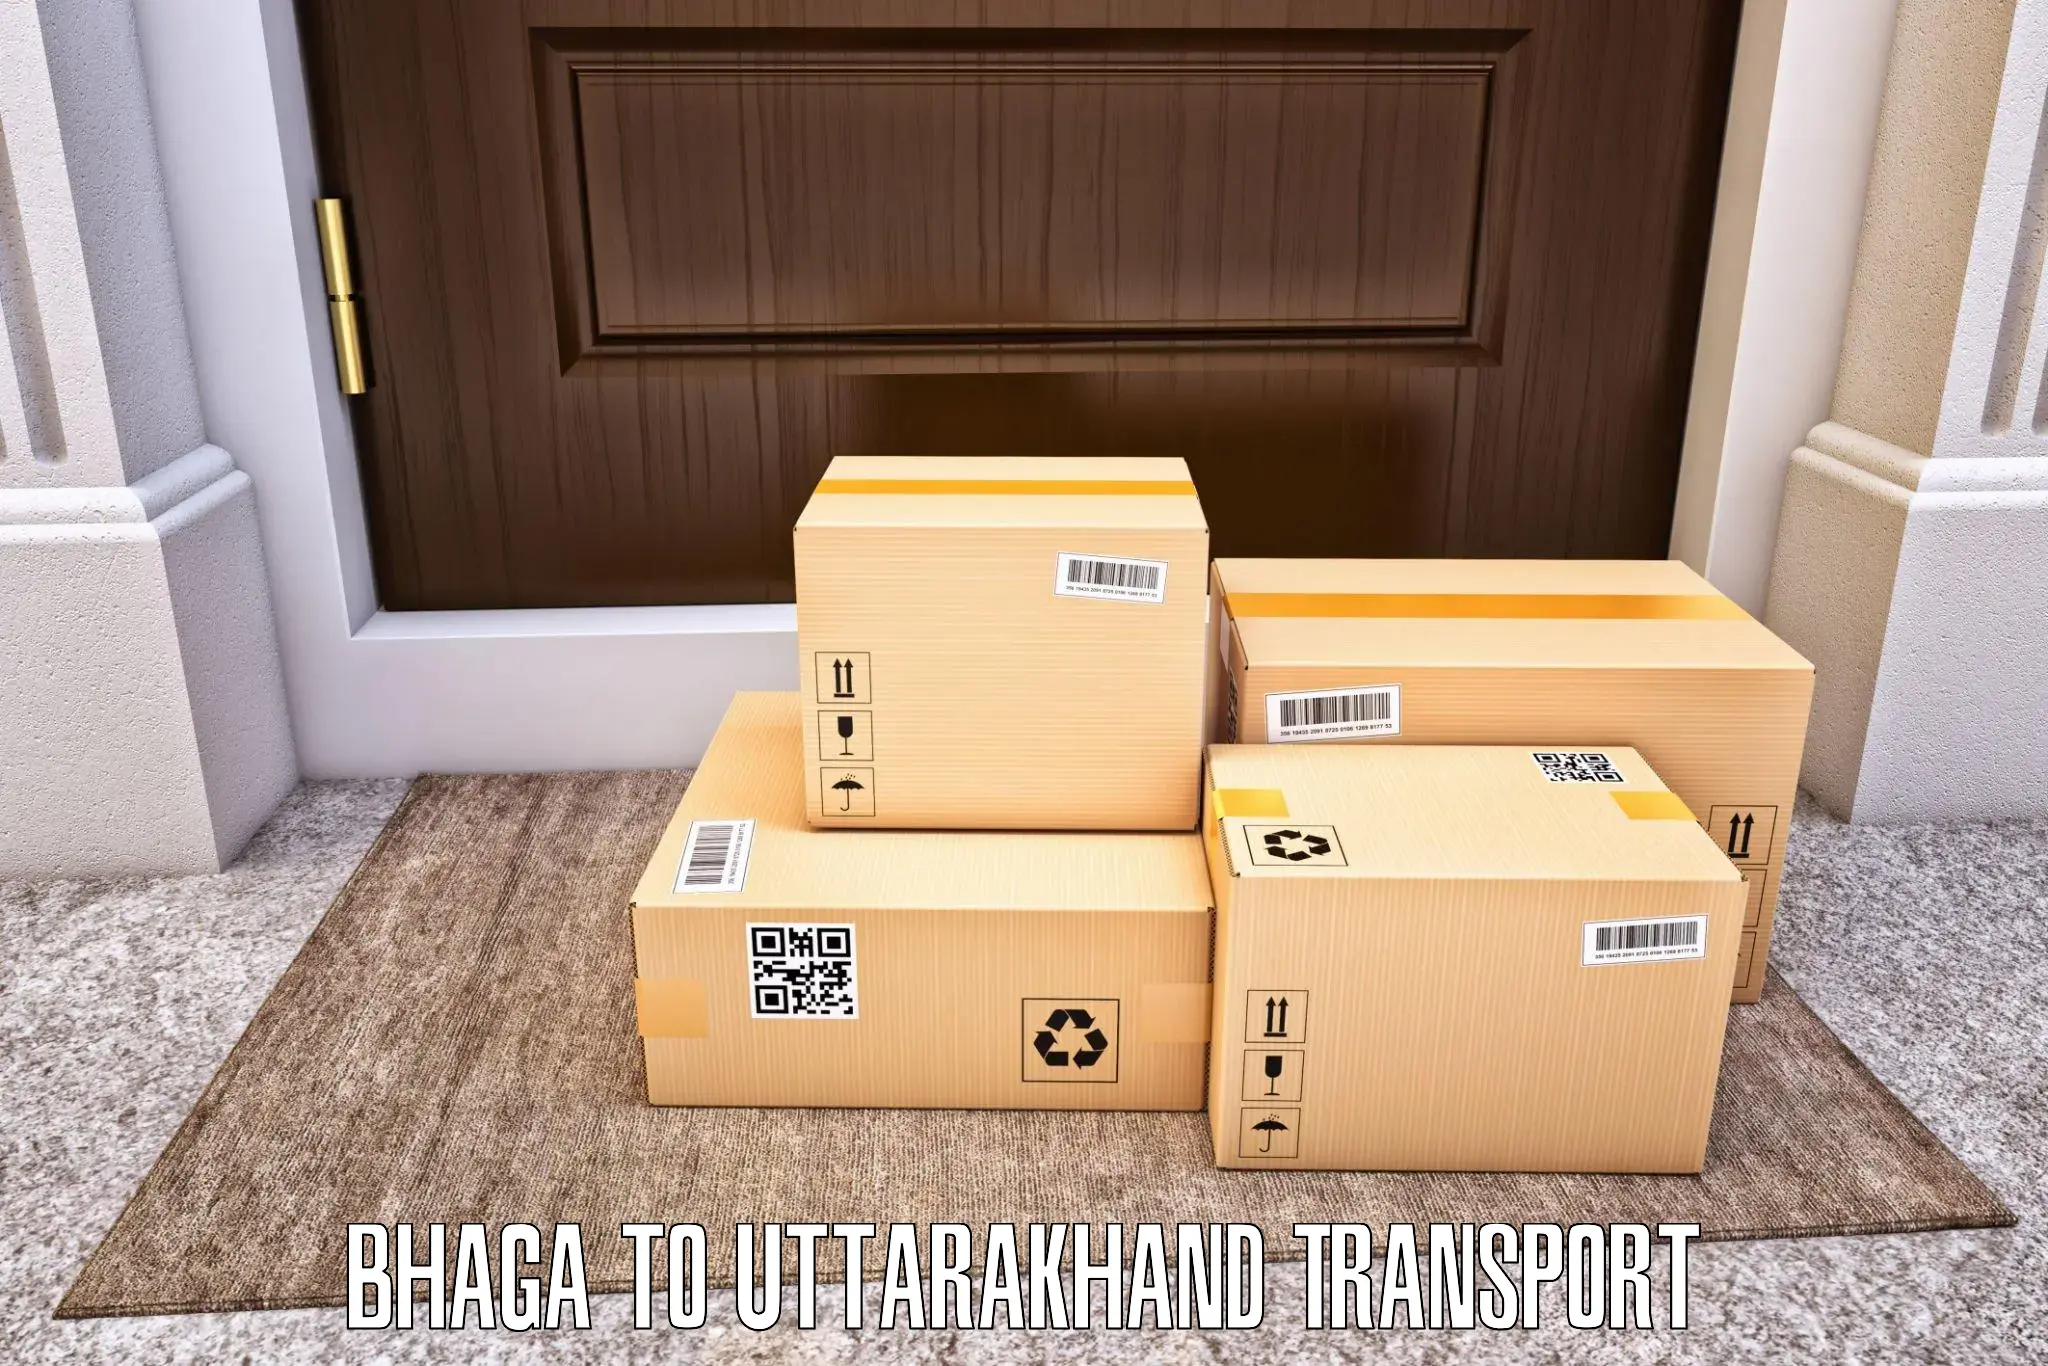 Furniture transport service Bhaga to Lansdowne